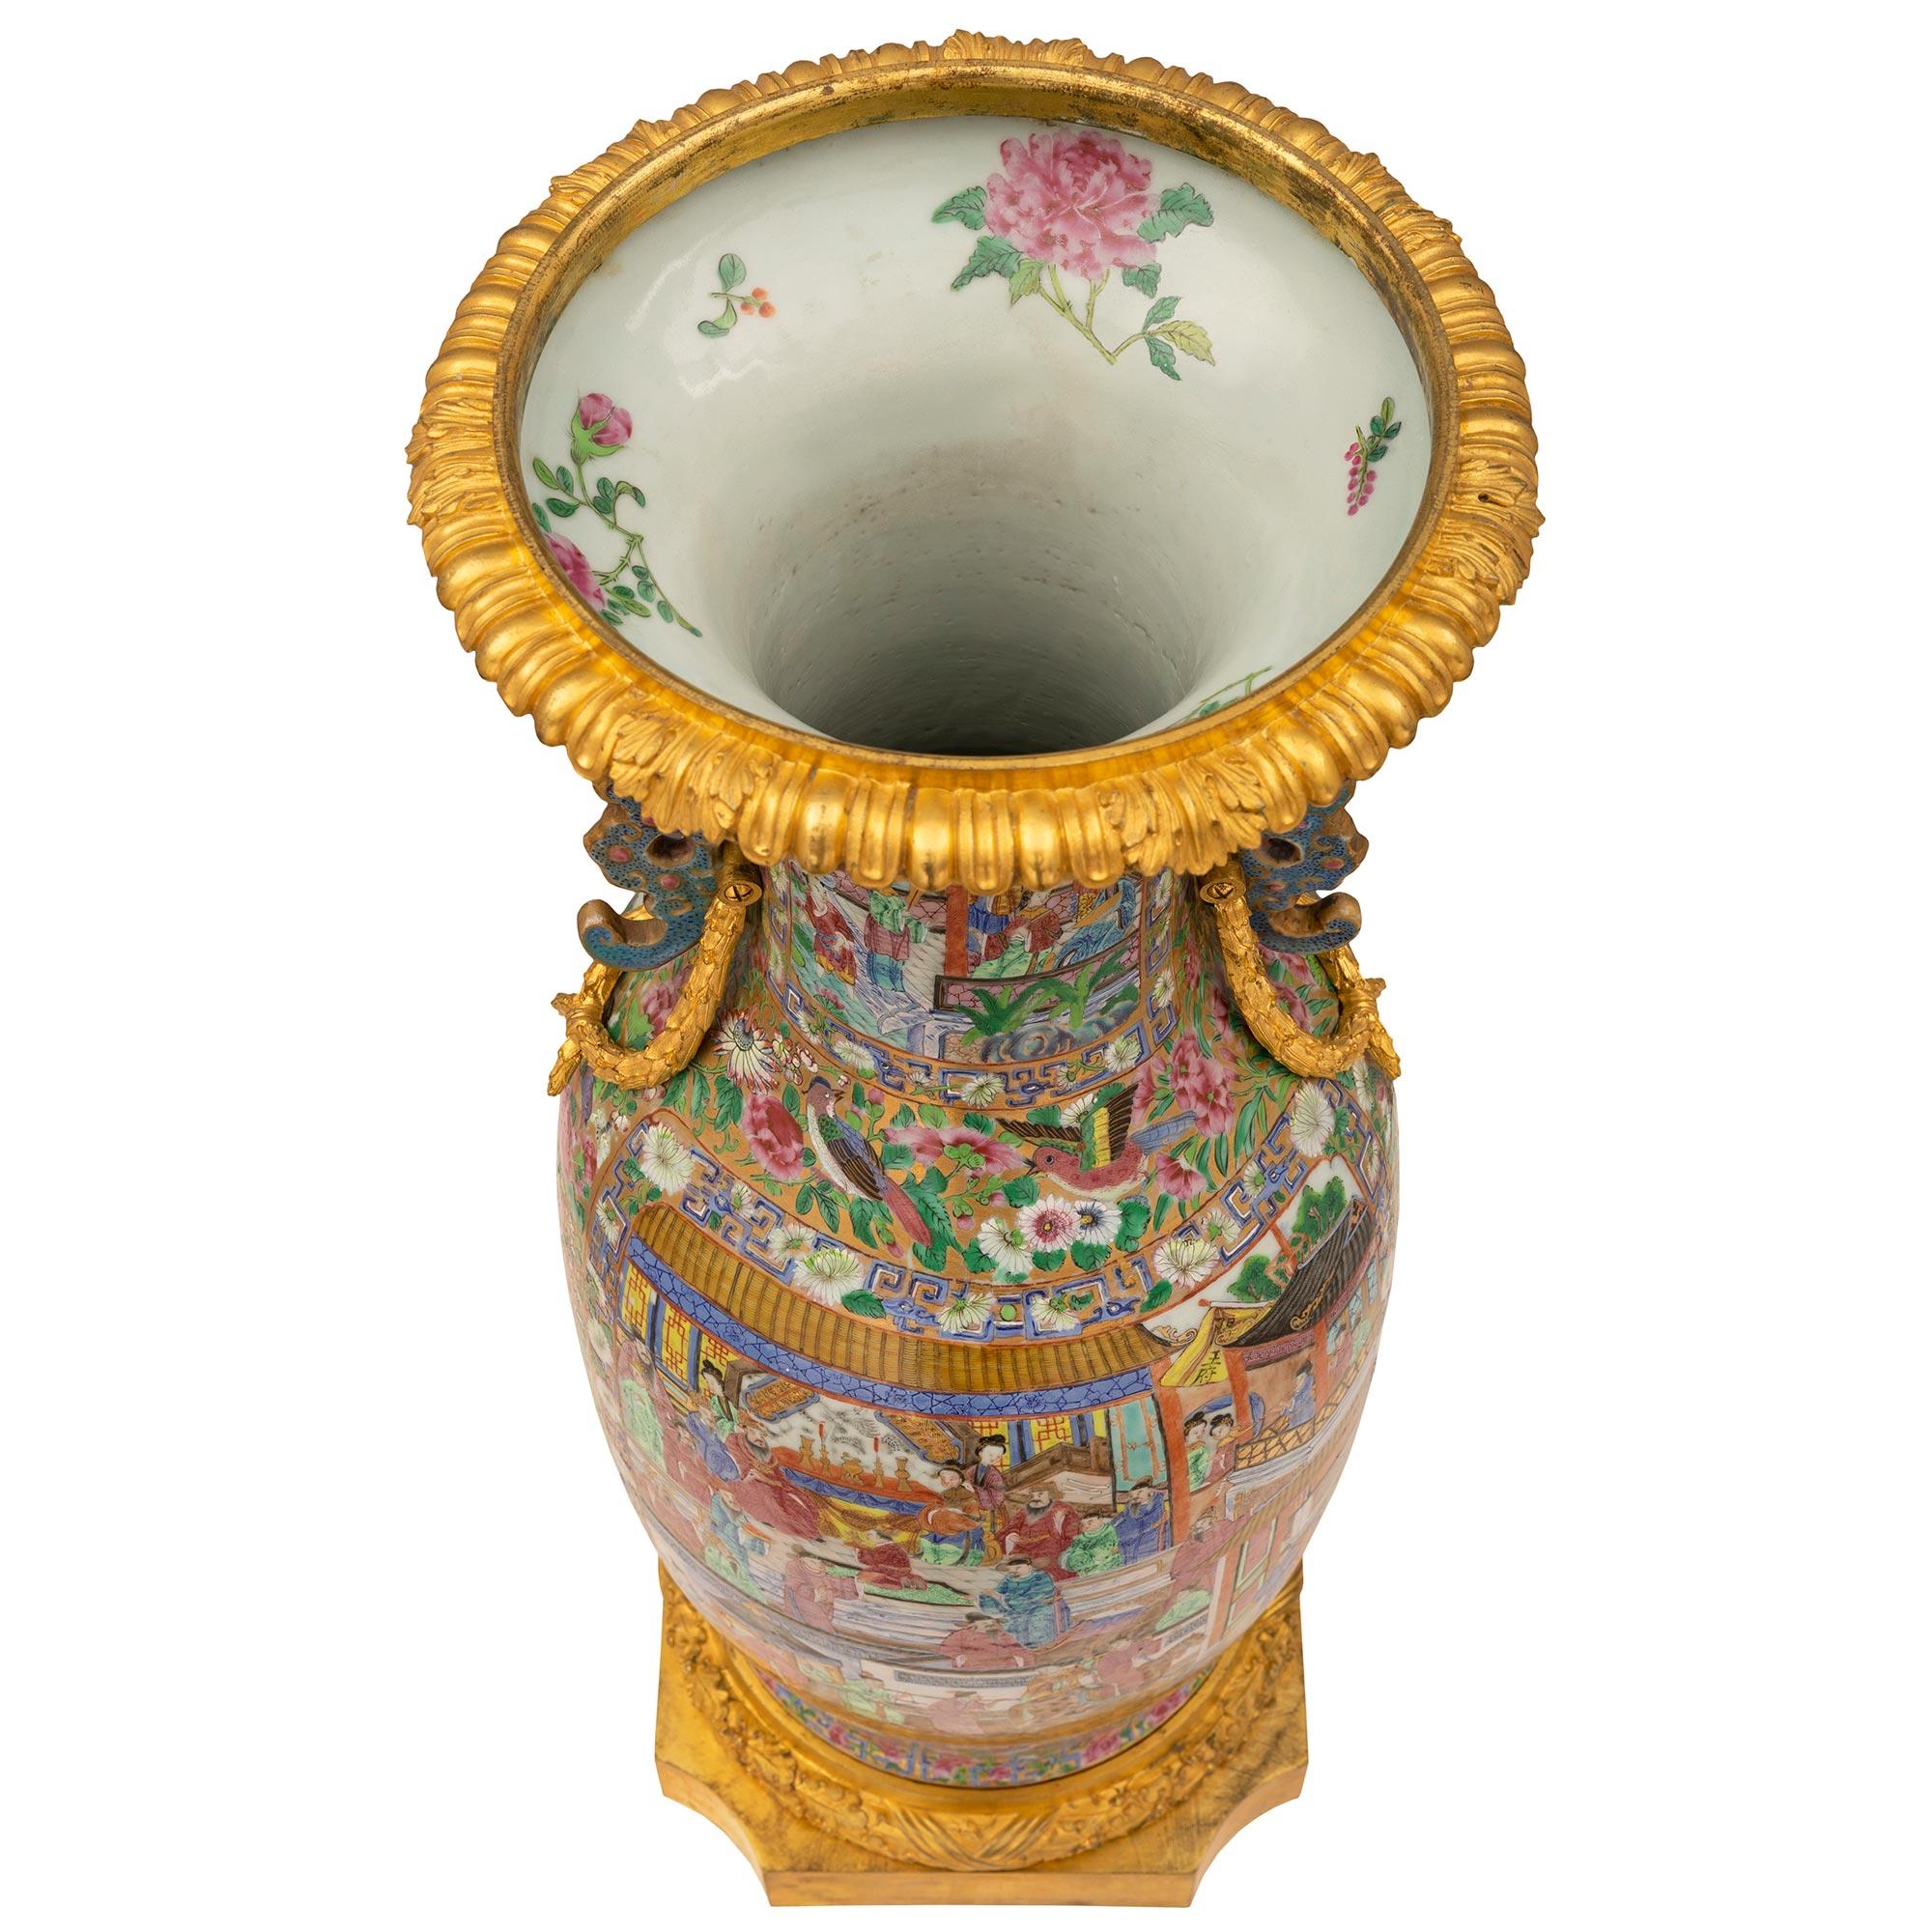 Une belle urne en porcelaine Famille Rose de style Louis XVI de haute qualité, de collaboration française et asiatique, datant du 19ème siècle. L'urne est surélevée par une fine base carrée en bronze doré avec des coins concaves et une bande de